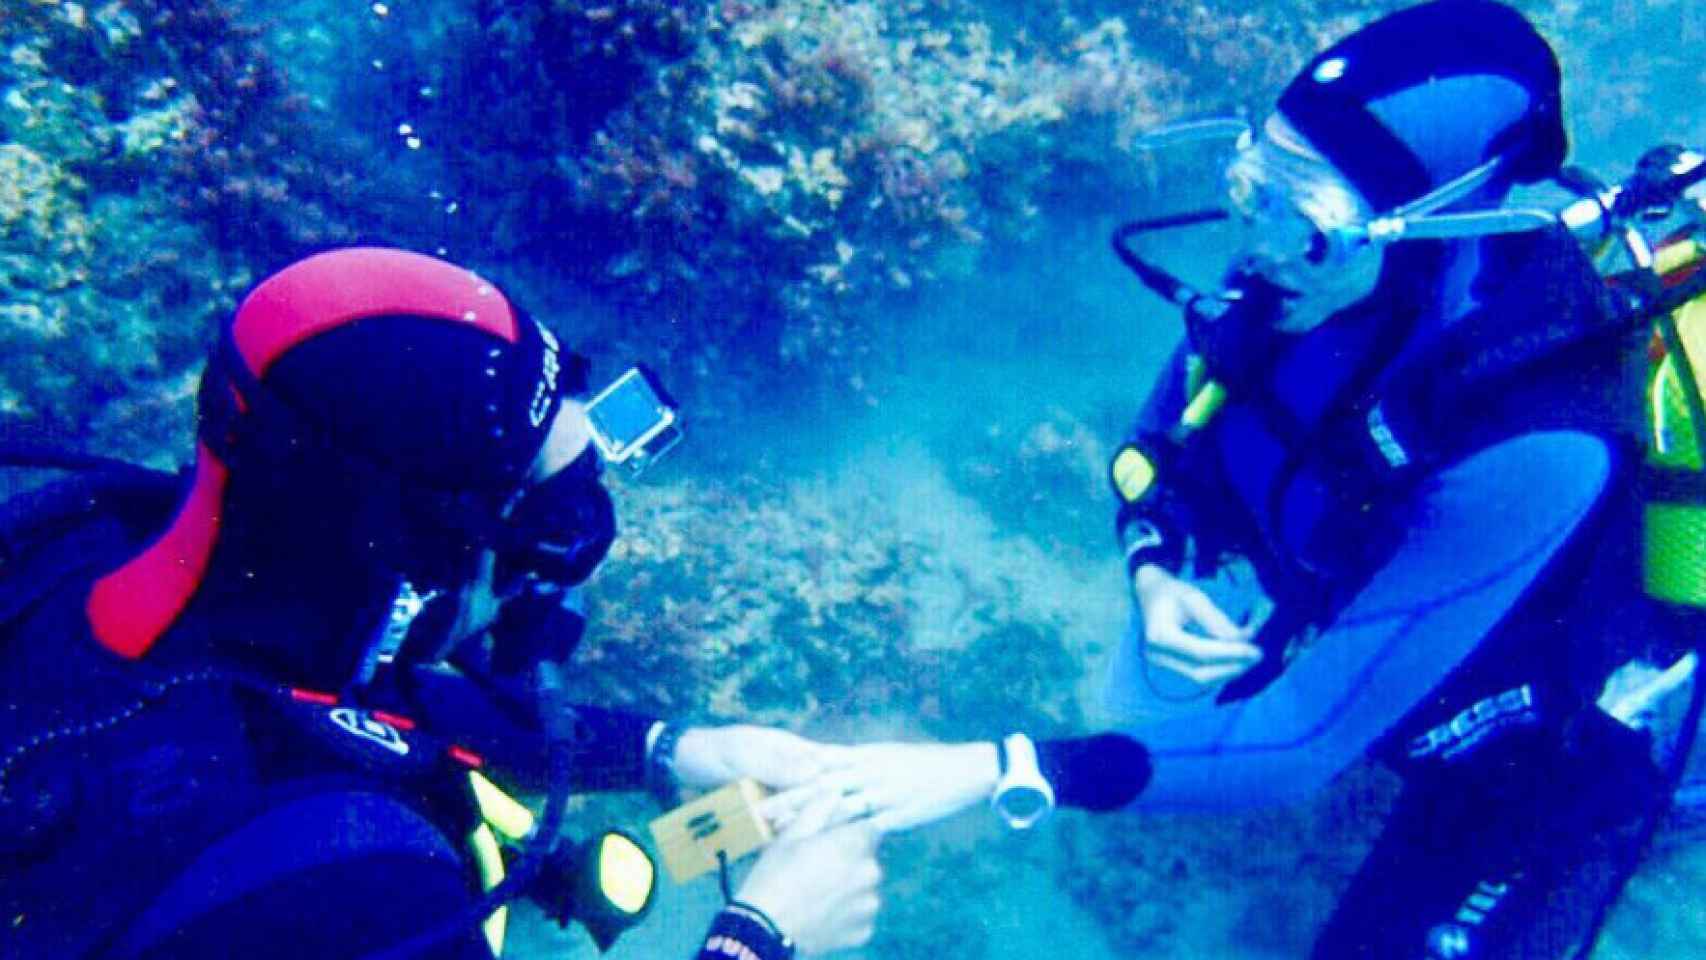 Álex Adróver pide la mano a Patricia Montero bajo el agua